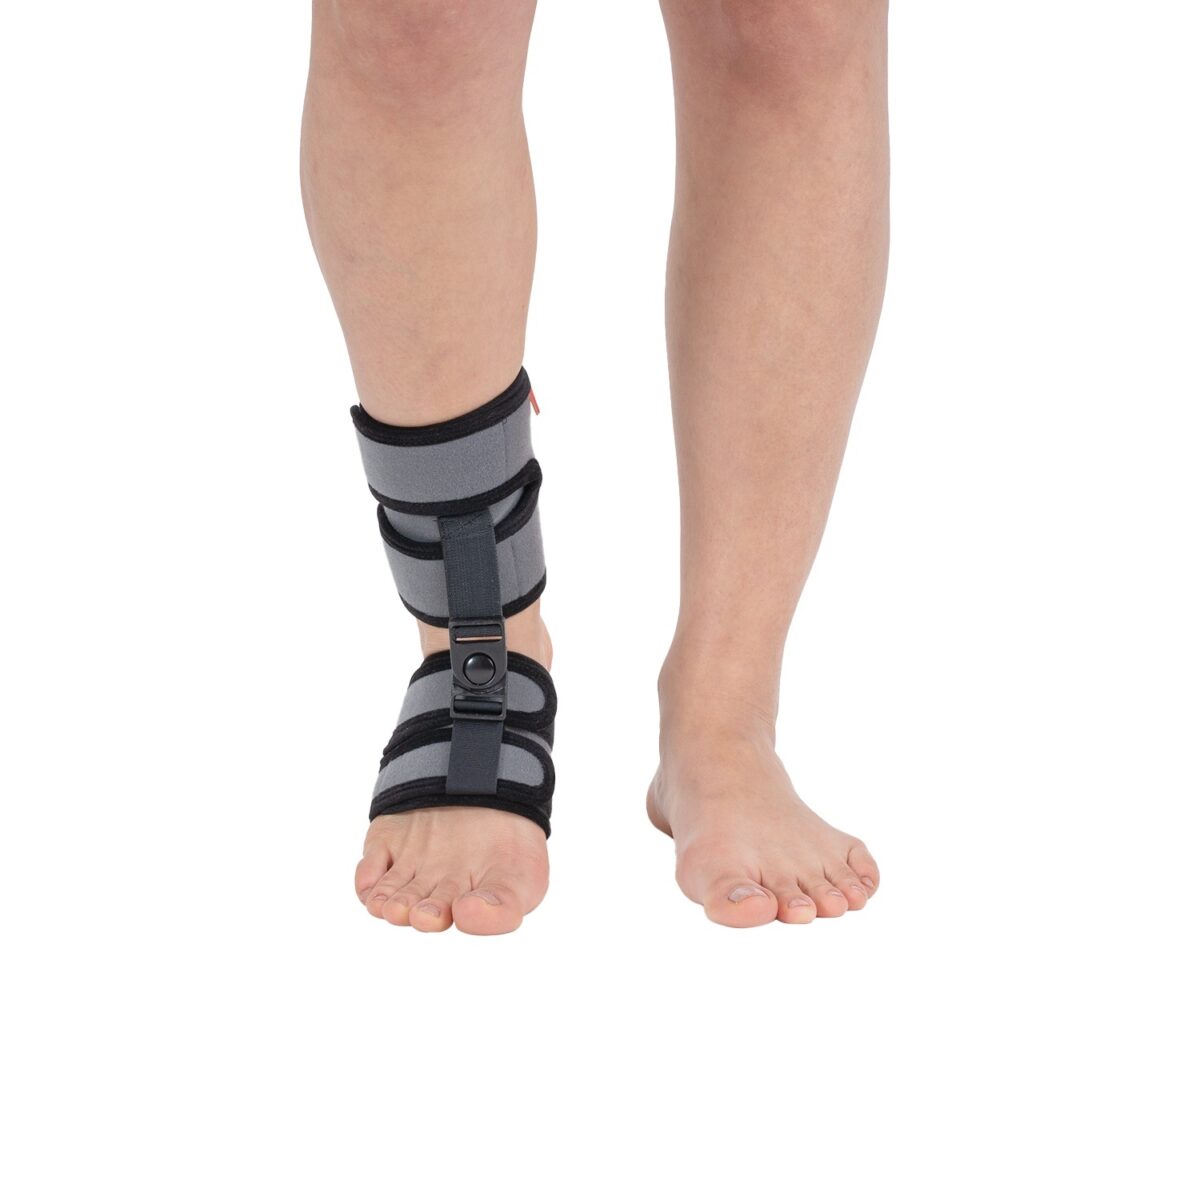 wingmed orthopedic equipments W623 dorsi flexion bandage low foot 33